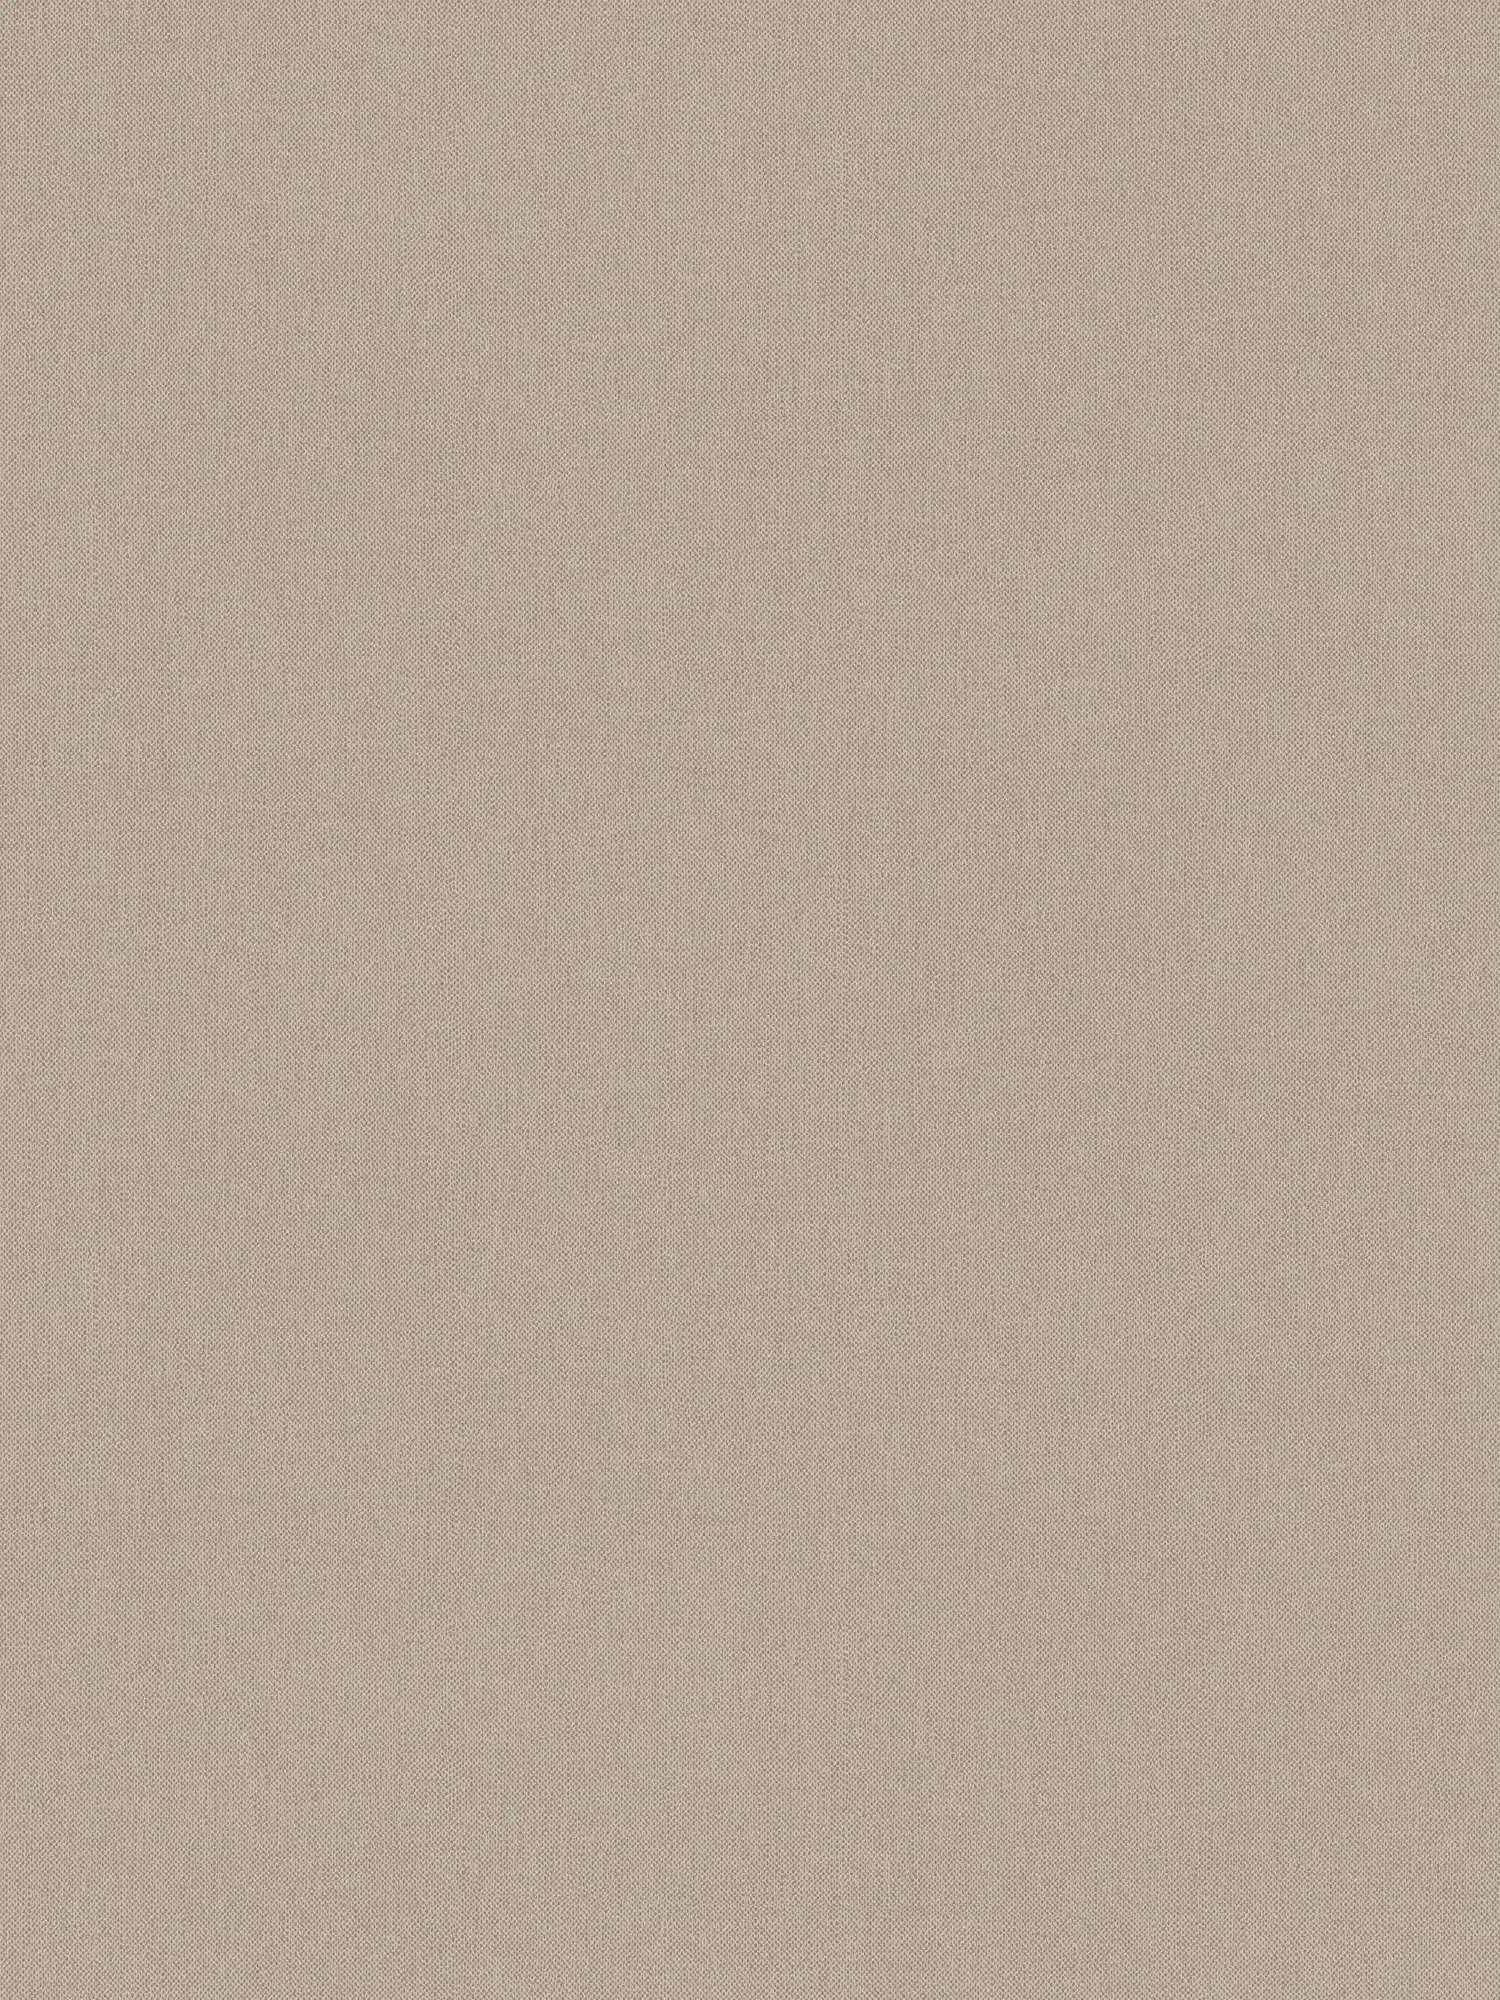 Papier peint intissé beige uni & mat à structure textile - beige, marron
